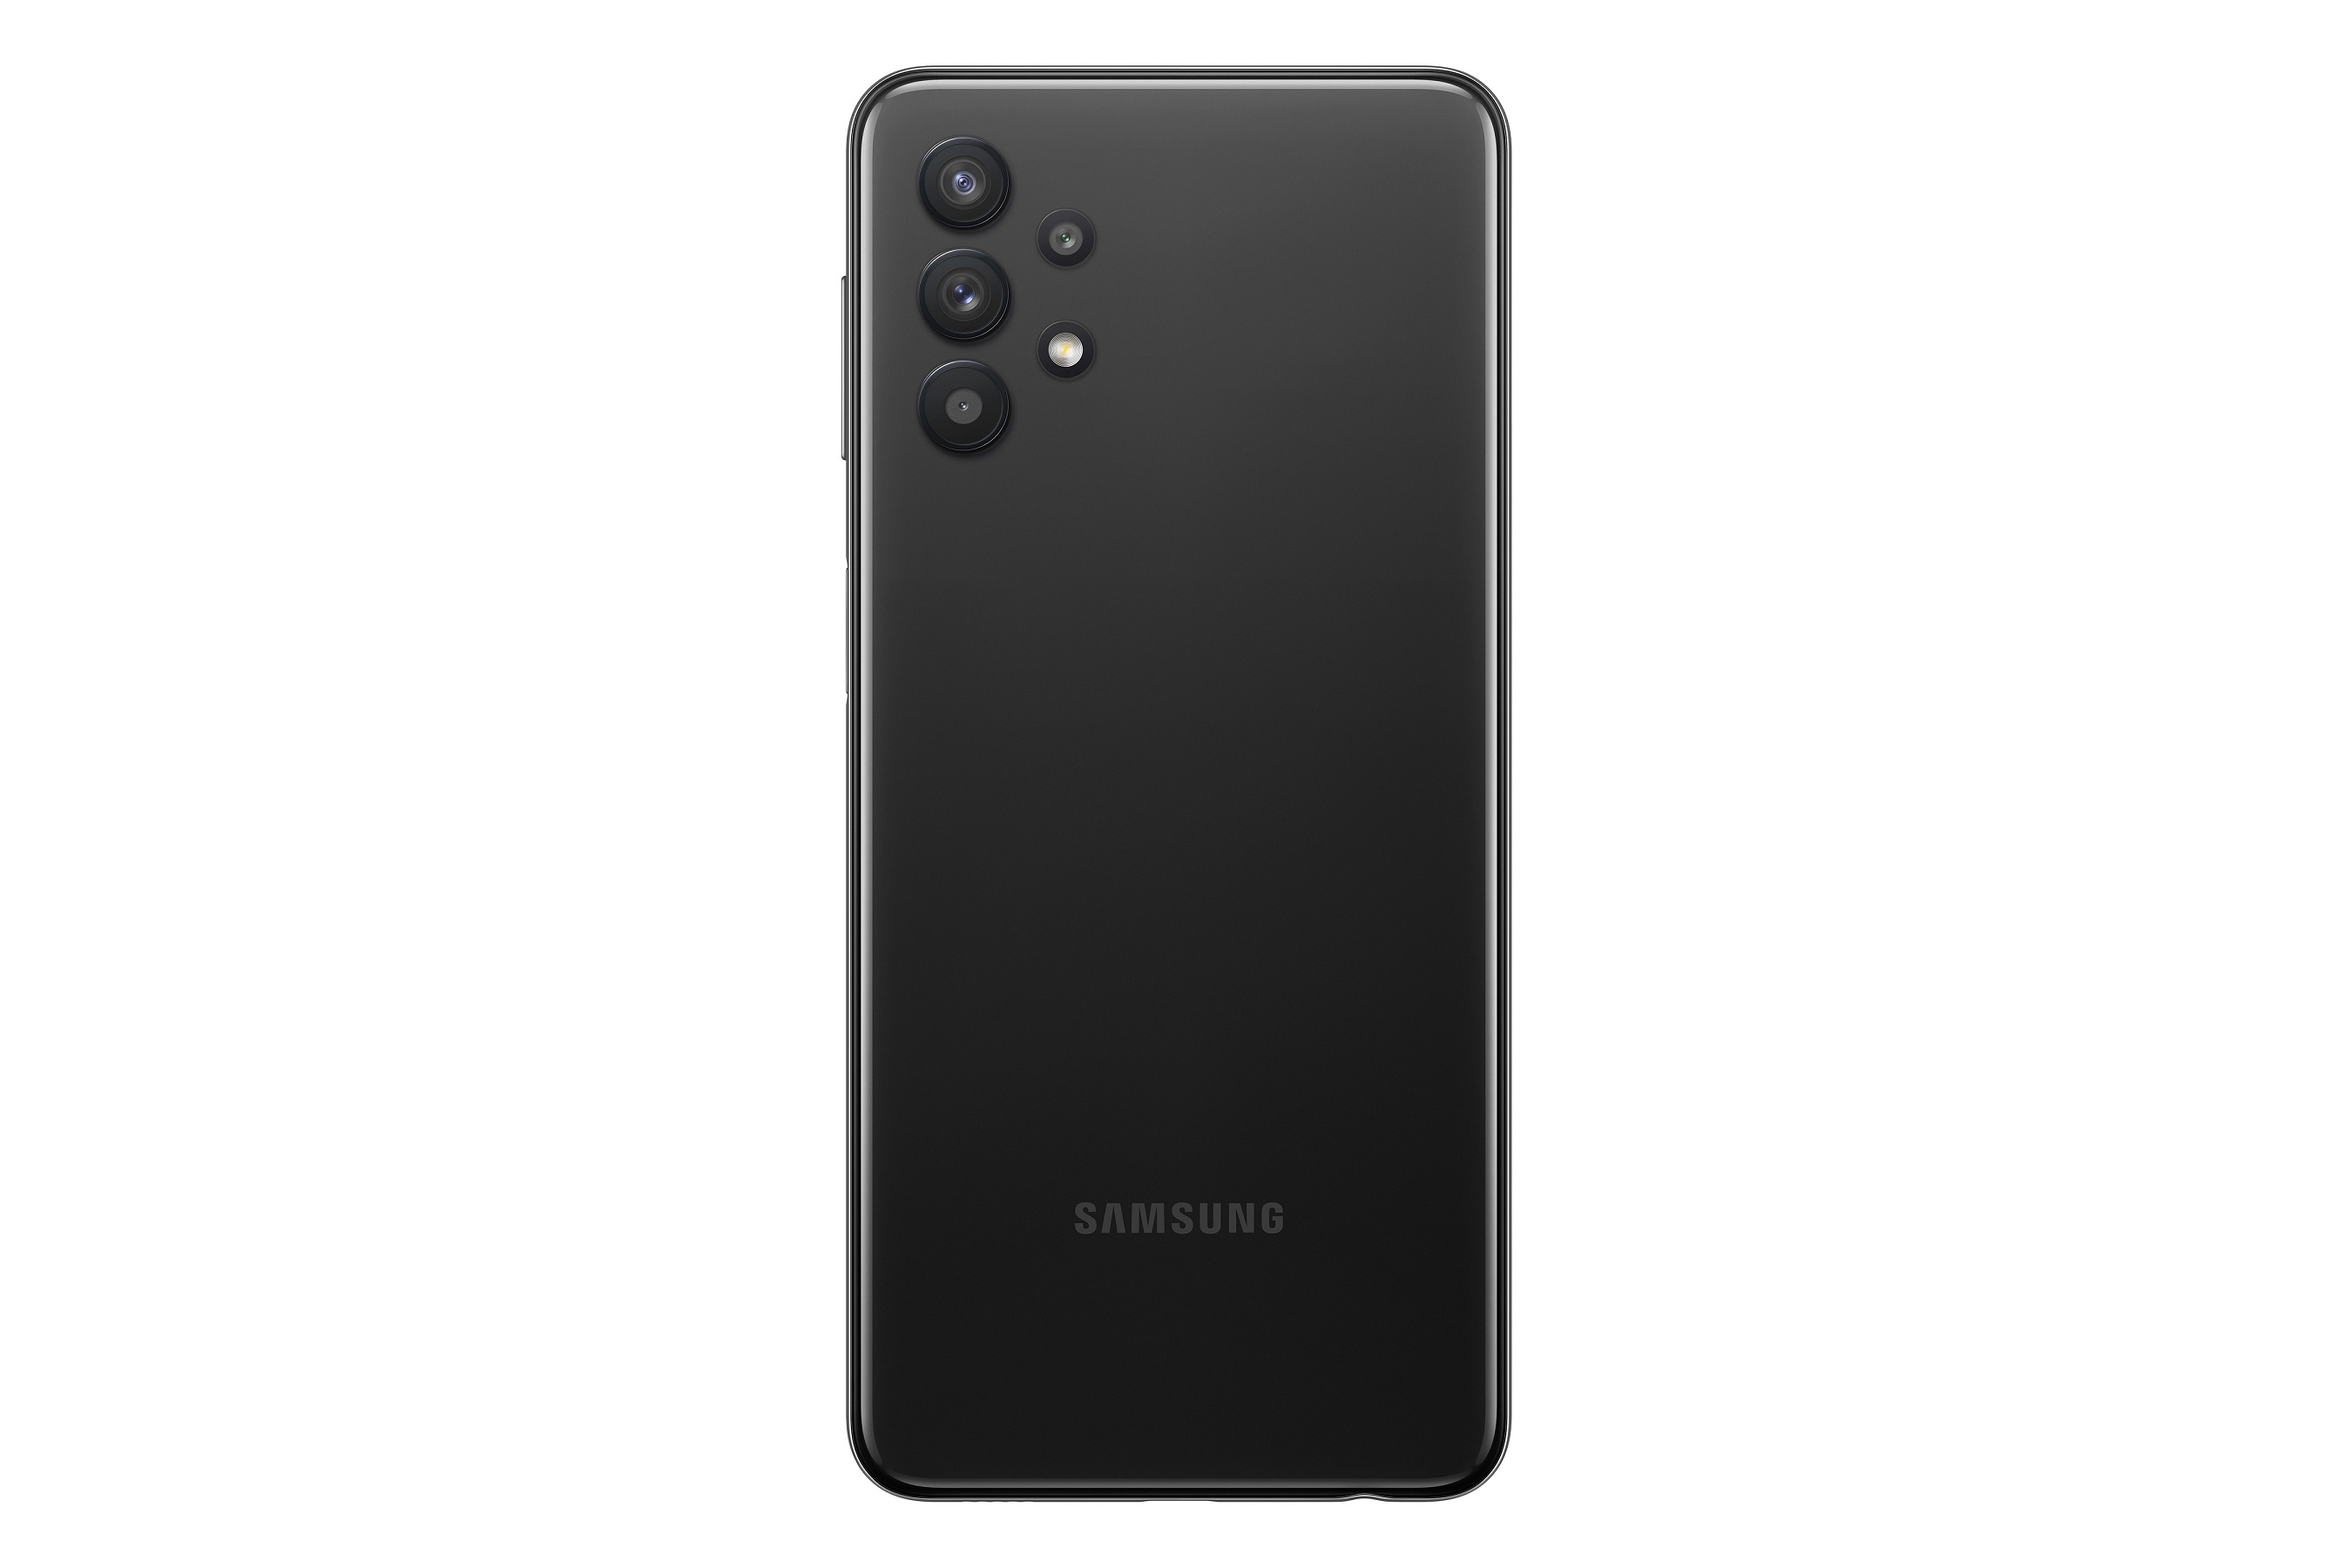 Samsung Galaxy A32 5G/4GB/128GB/Black